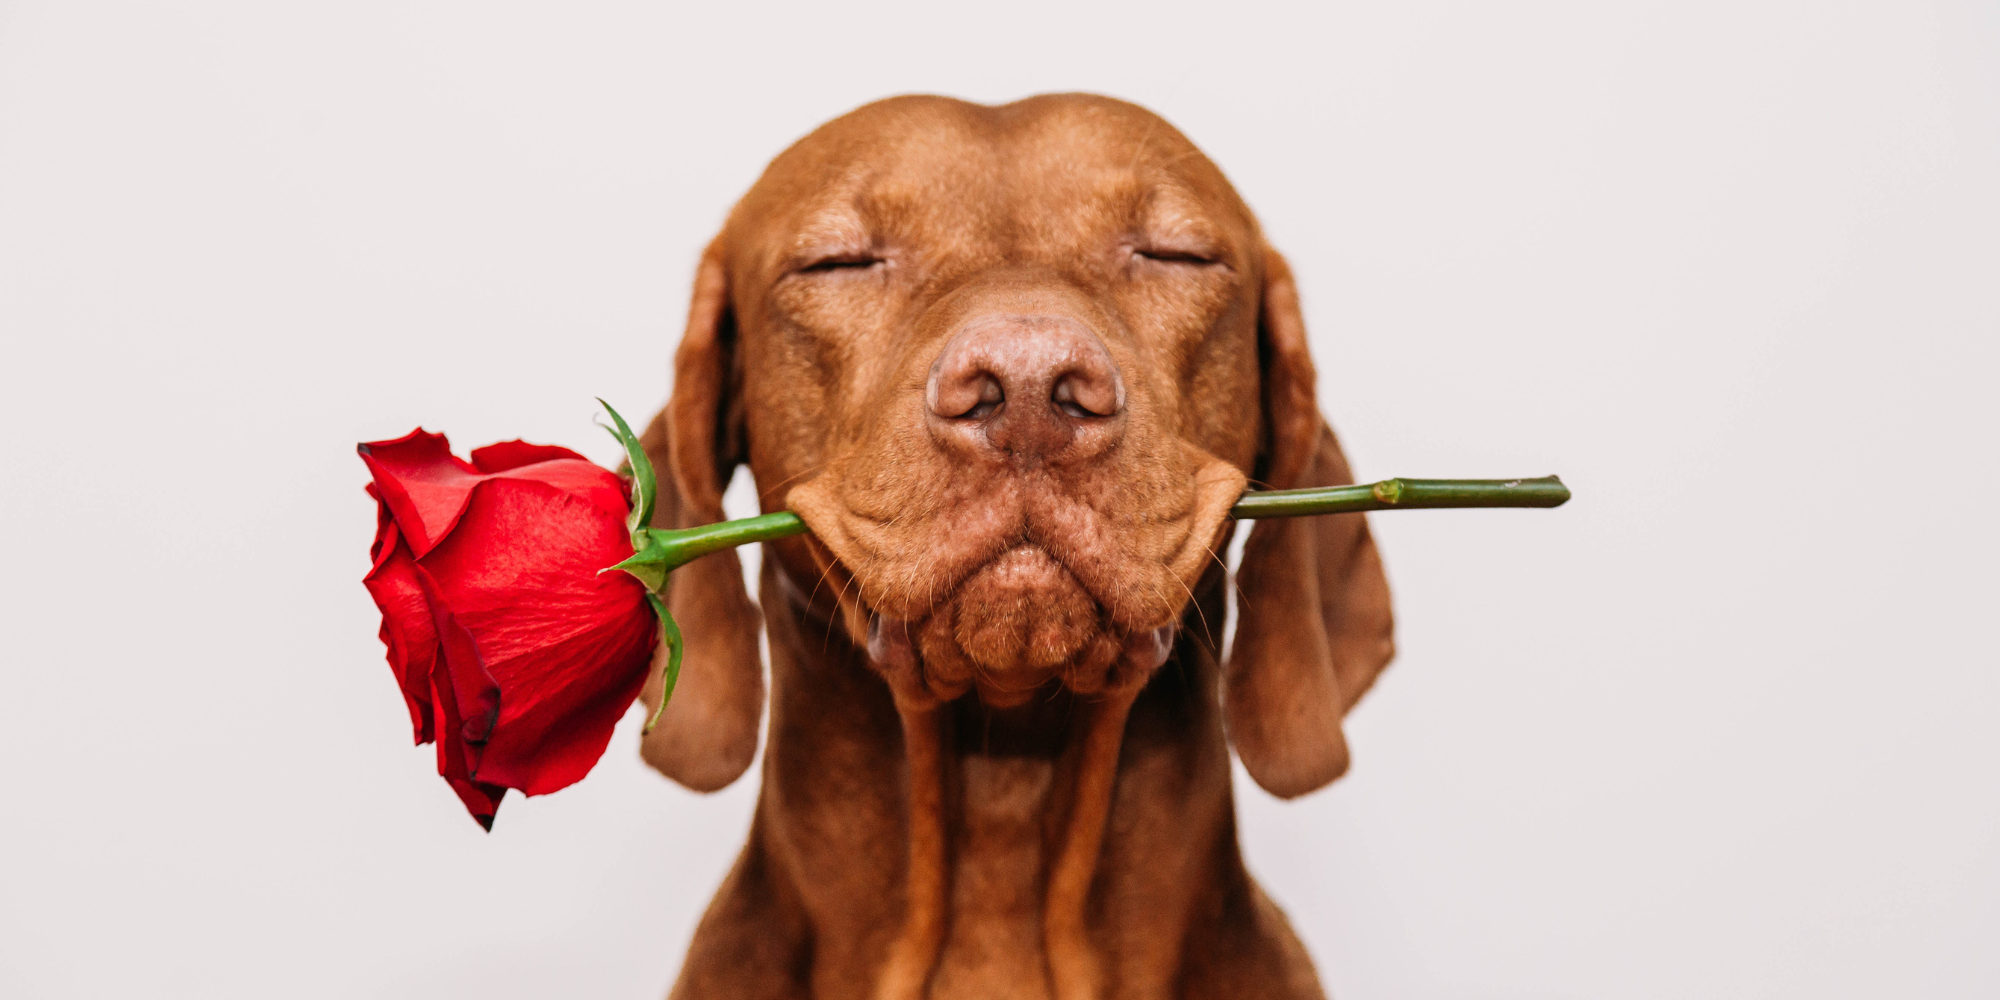 Glöm inte alla hjärtans dag. Här är hunden som kommer med rosen.